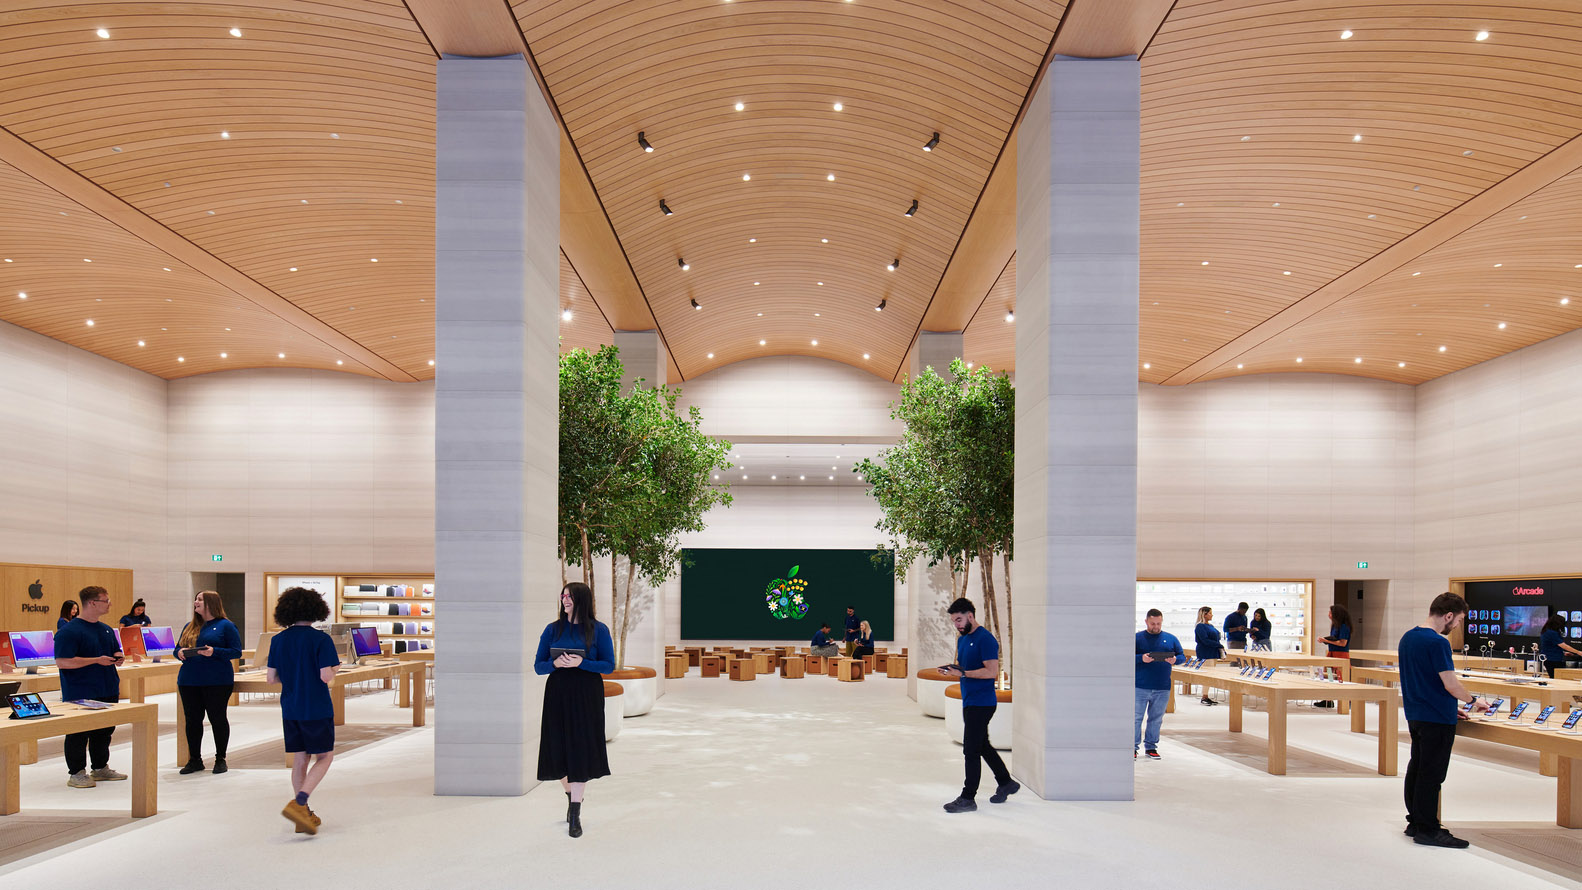 Foster + Partners,苹果伦敦布朗普顿路店,苹果零售店设计,Apple Store,福斯特建筑事务所,苹果体验店店,英国,伦敦